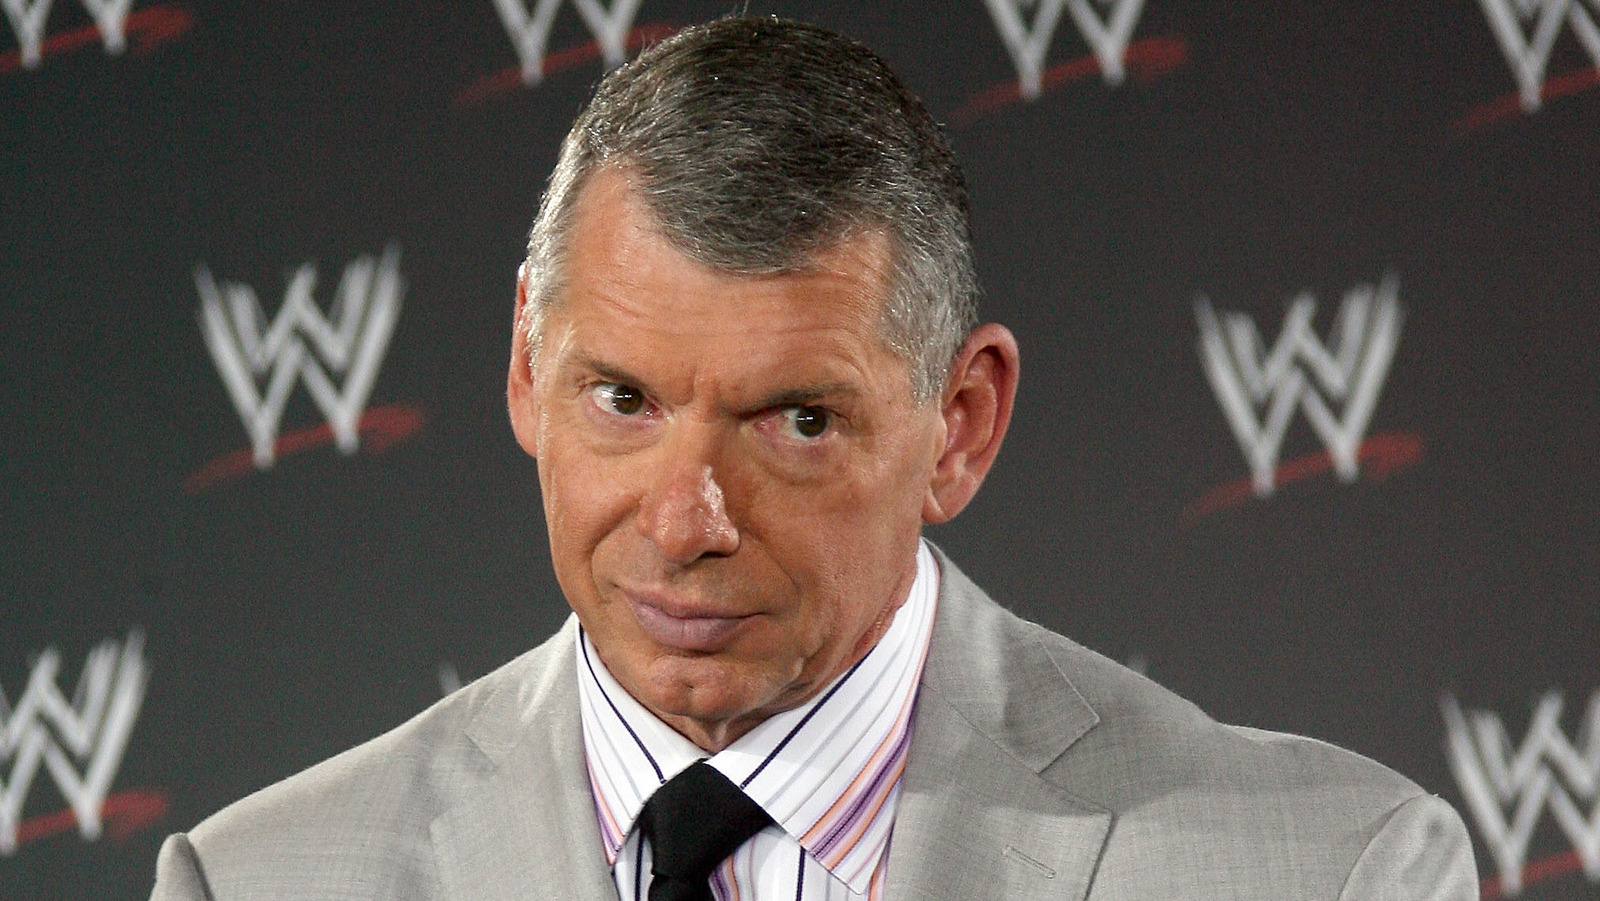 La ex estrella de la WWE Maven explica su reticencia a hablar sobre las acusaciones de Vince McMahon